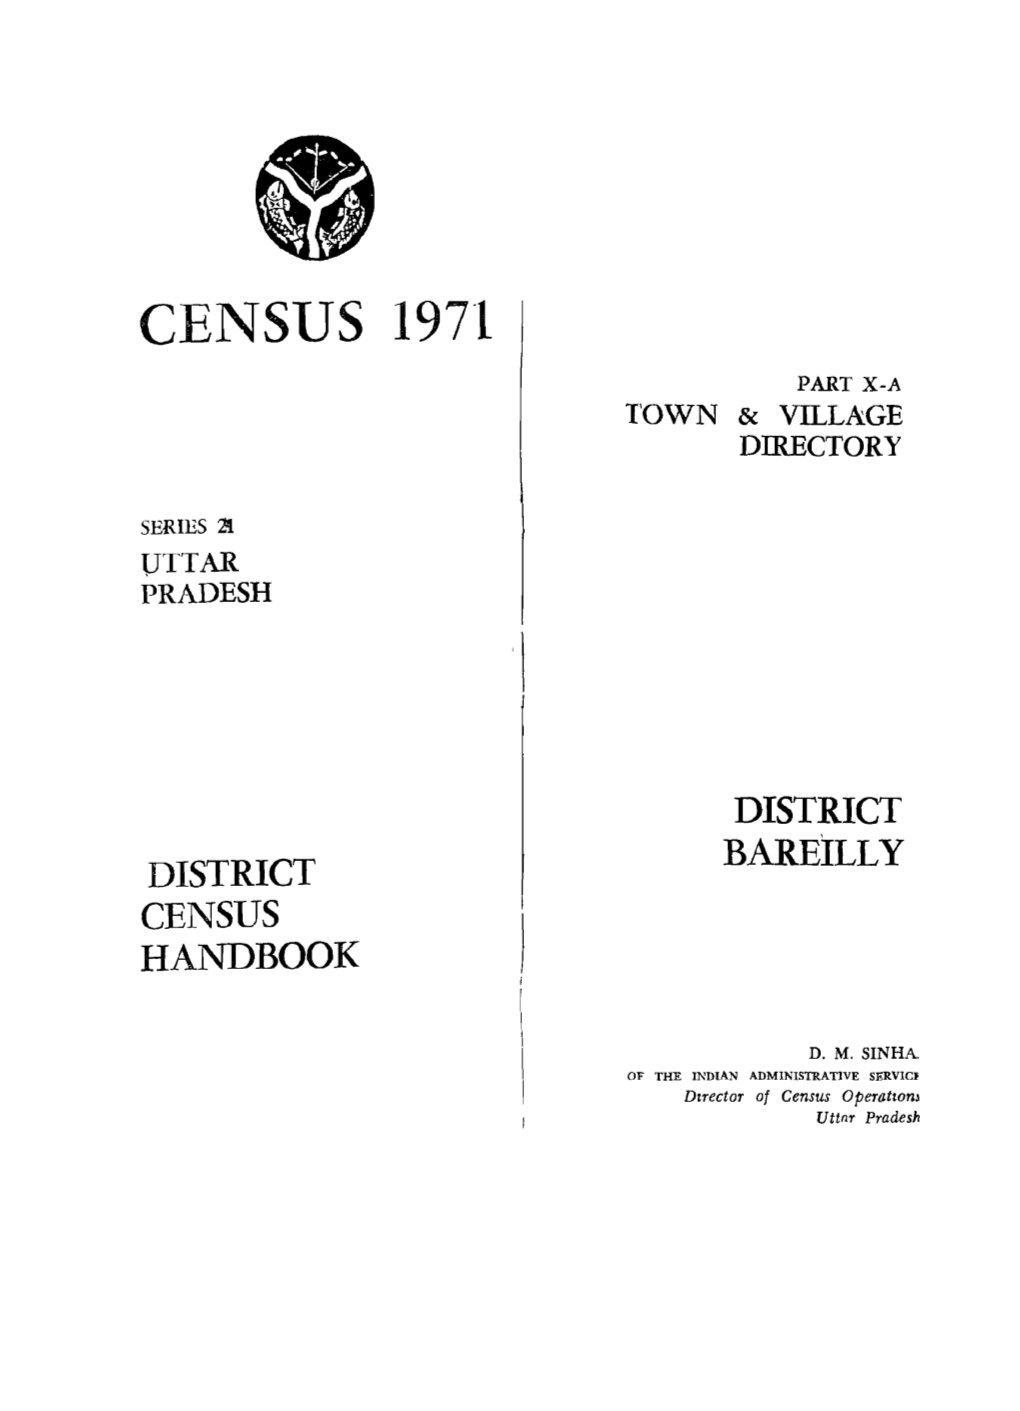 District Census Handbook, Bareilly, Part X-A, Series-21, Uttar Pradesh